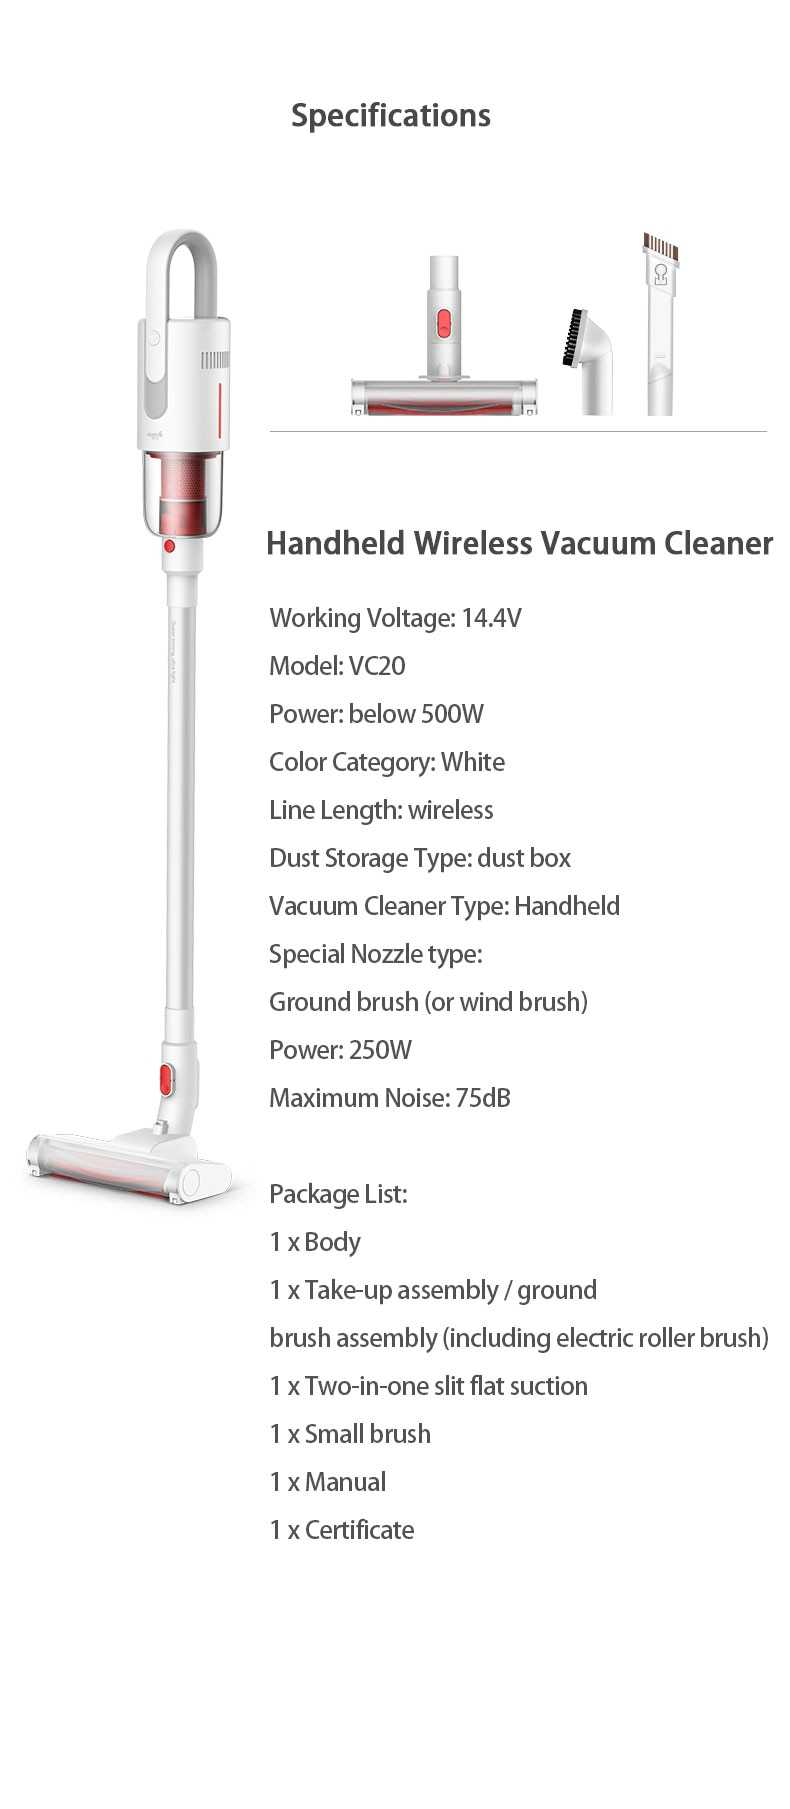 Mi Deerma Handheld Wireless Vacuum Cleaner VC20